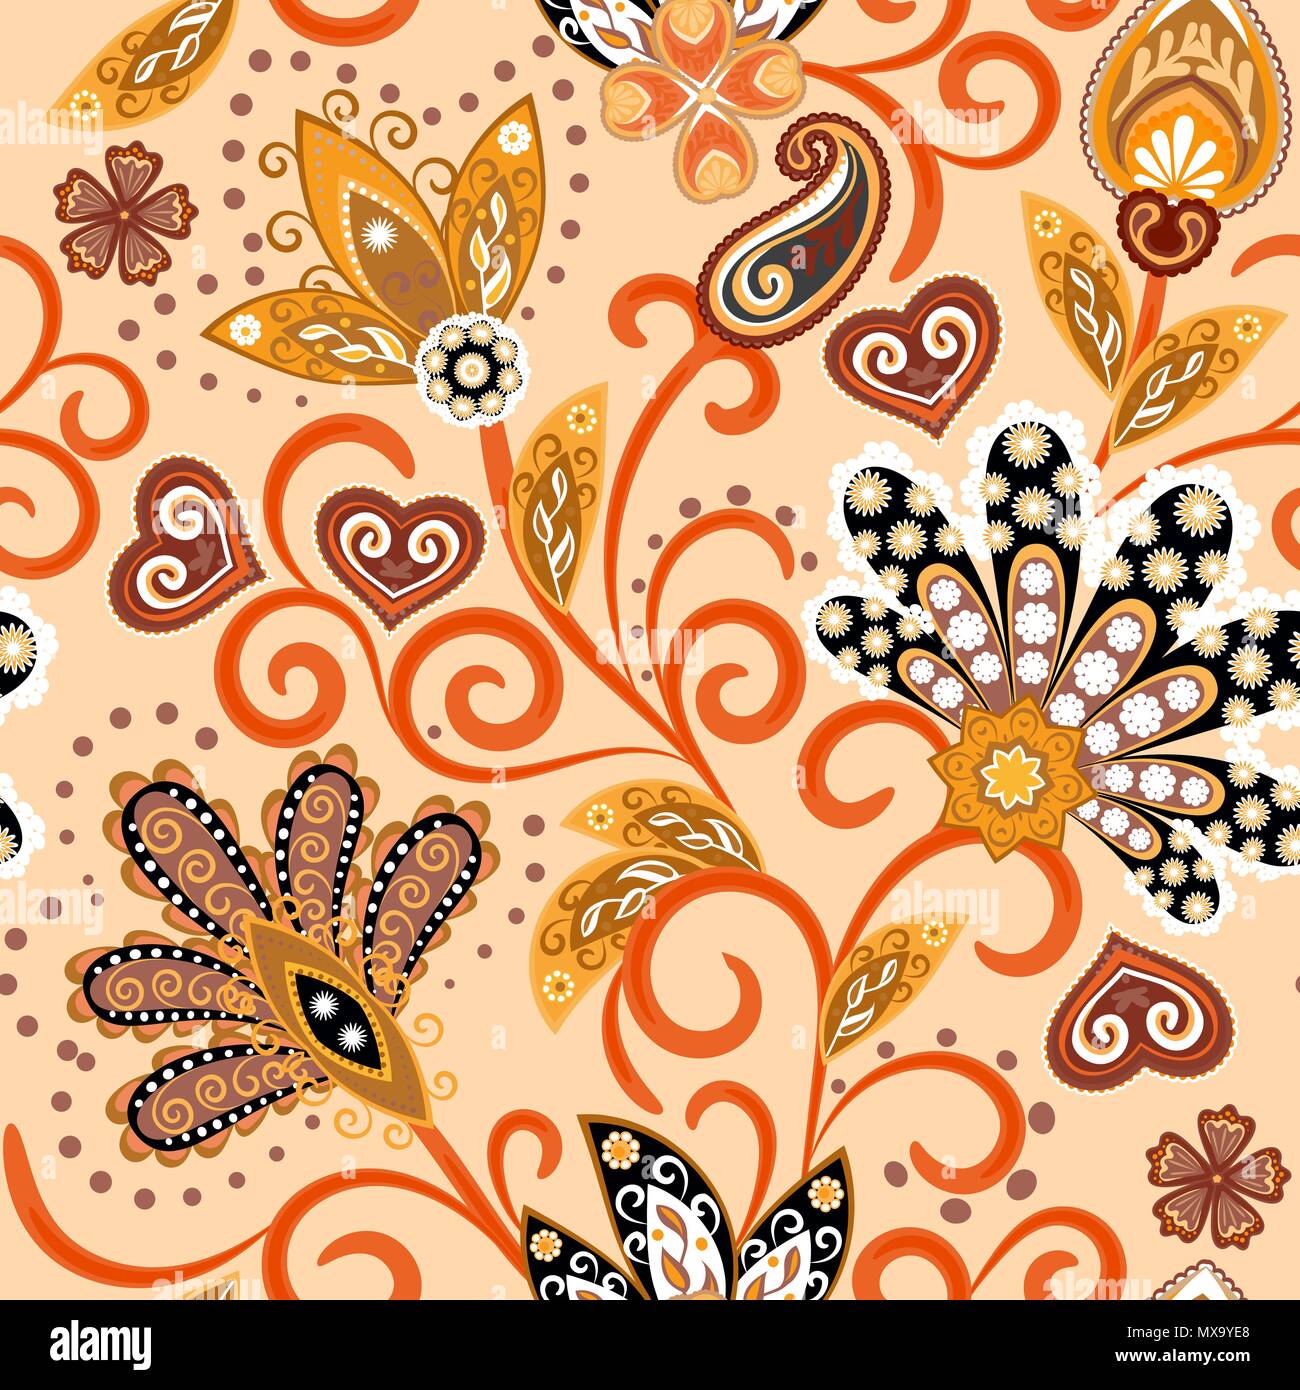 Họa tiết vintage phong cách in Batik Ấn Độ là một sự kết hợp tuyệt vời giữa hai nền văn hóa độc đáo, tạo ra các kiểu hoa văn rực rỡ và đáng yêu. Mỗi đường nét, mỗi gam màu, đều thể hiện độ tinh tế và sự tính cách riêng của nó. Bạn sẽ không thể rời mắt khỏi hình ảnh khi được thưởng thức những kiểu họa tiết đặc sắc này.